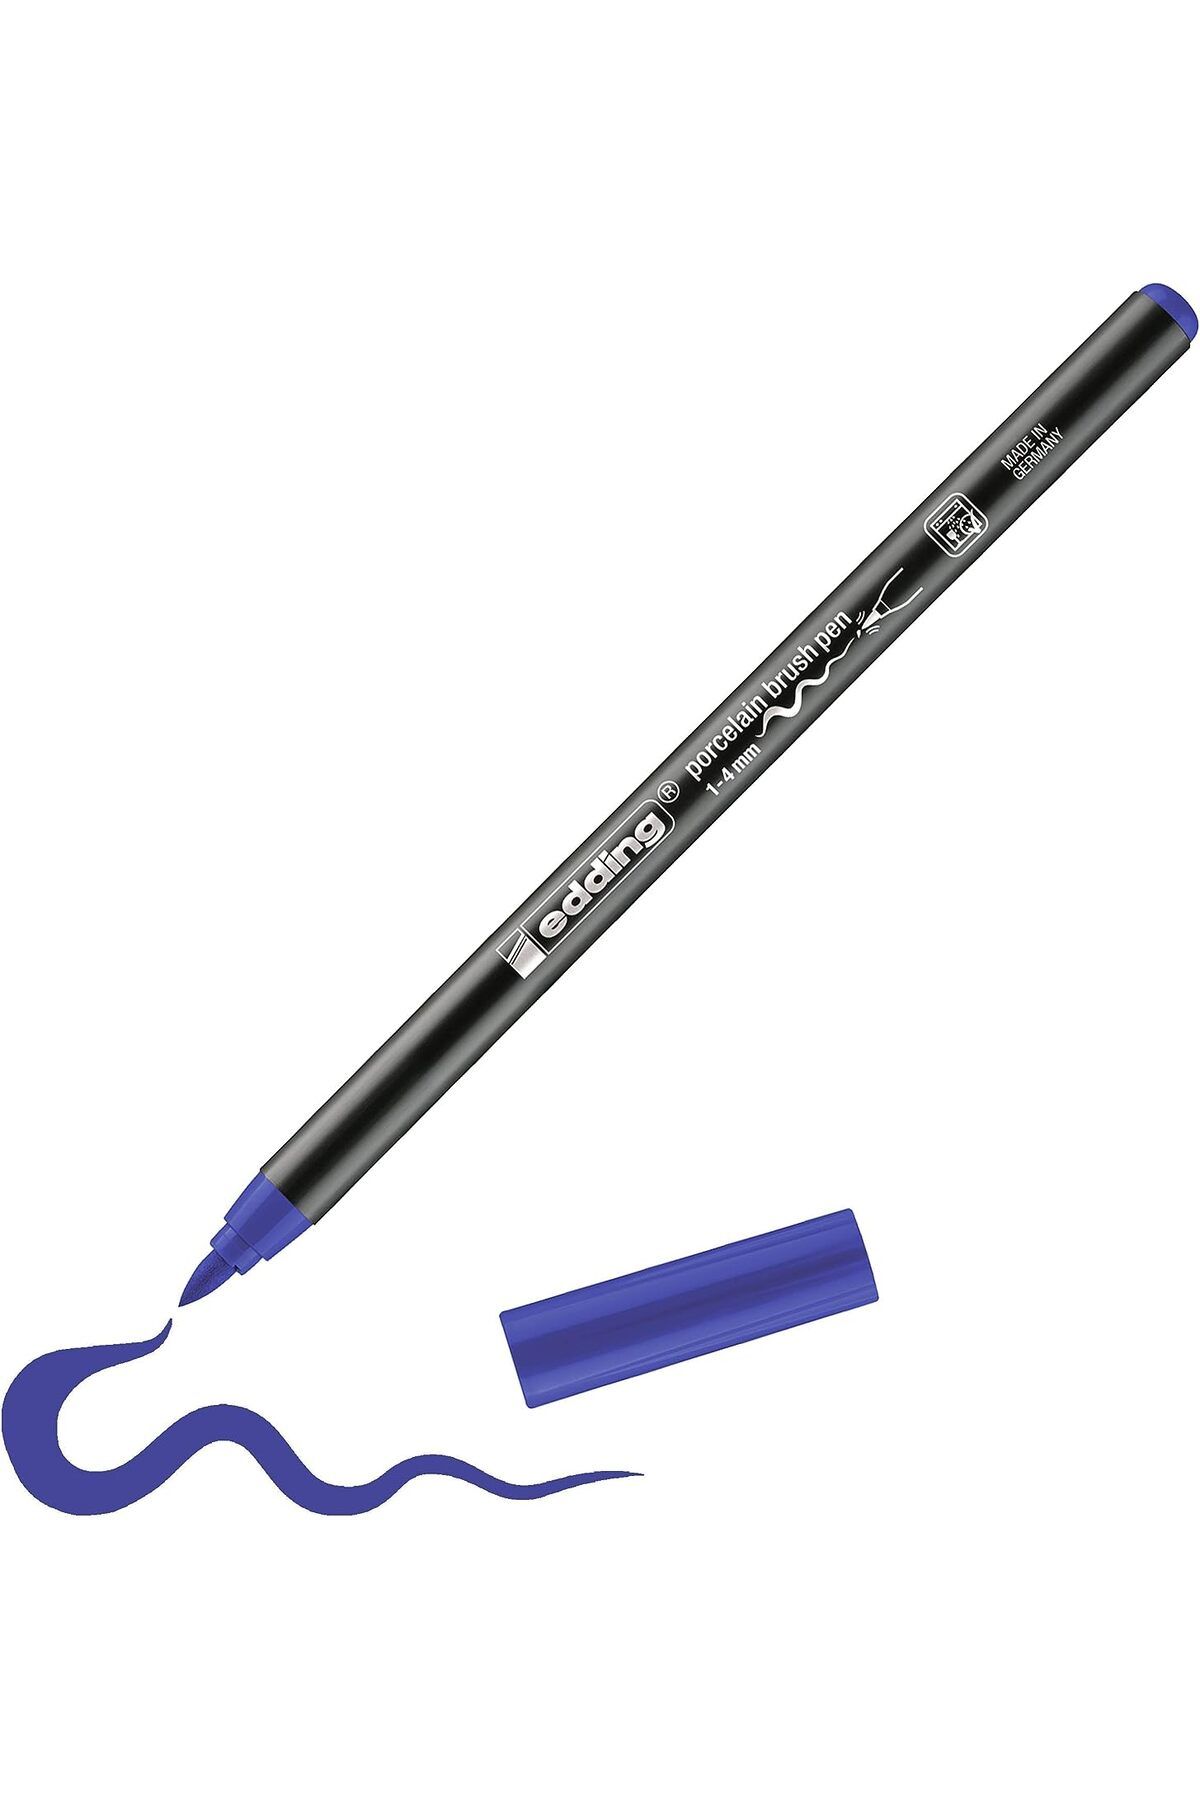 Edding 4200 Fırça Uçlu Porselen Kalemi 1-4mm – Mavi